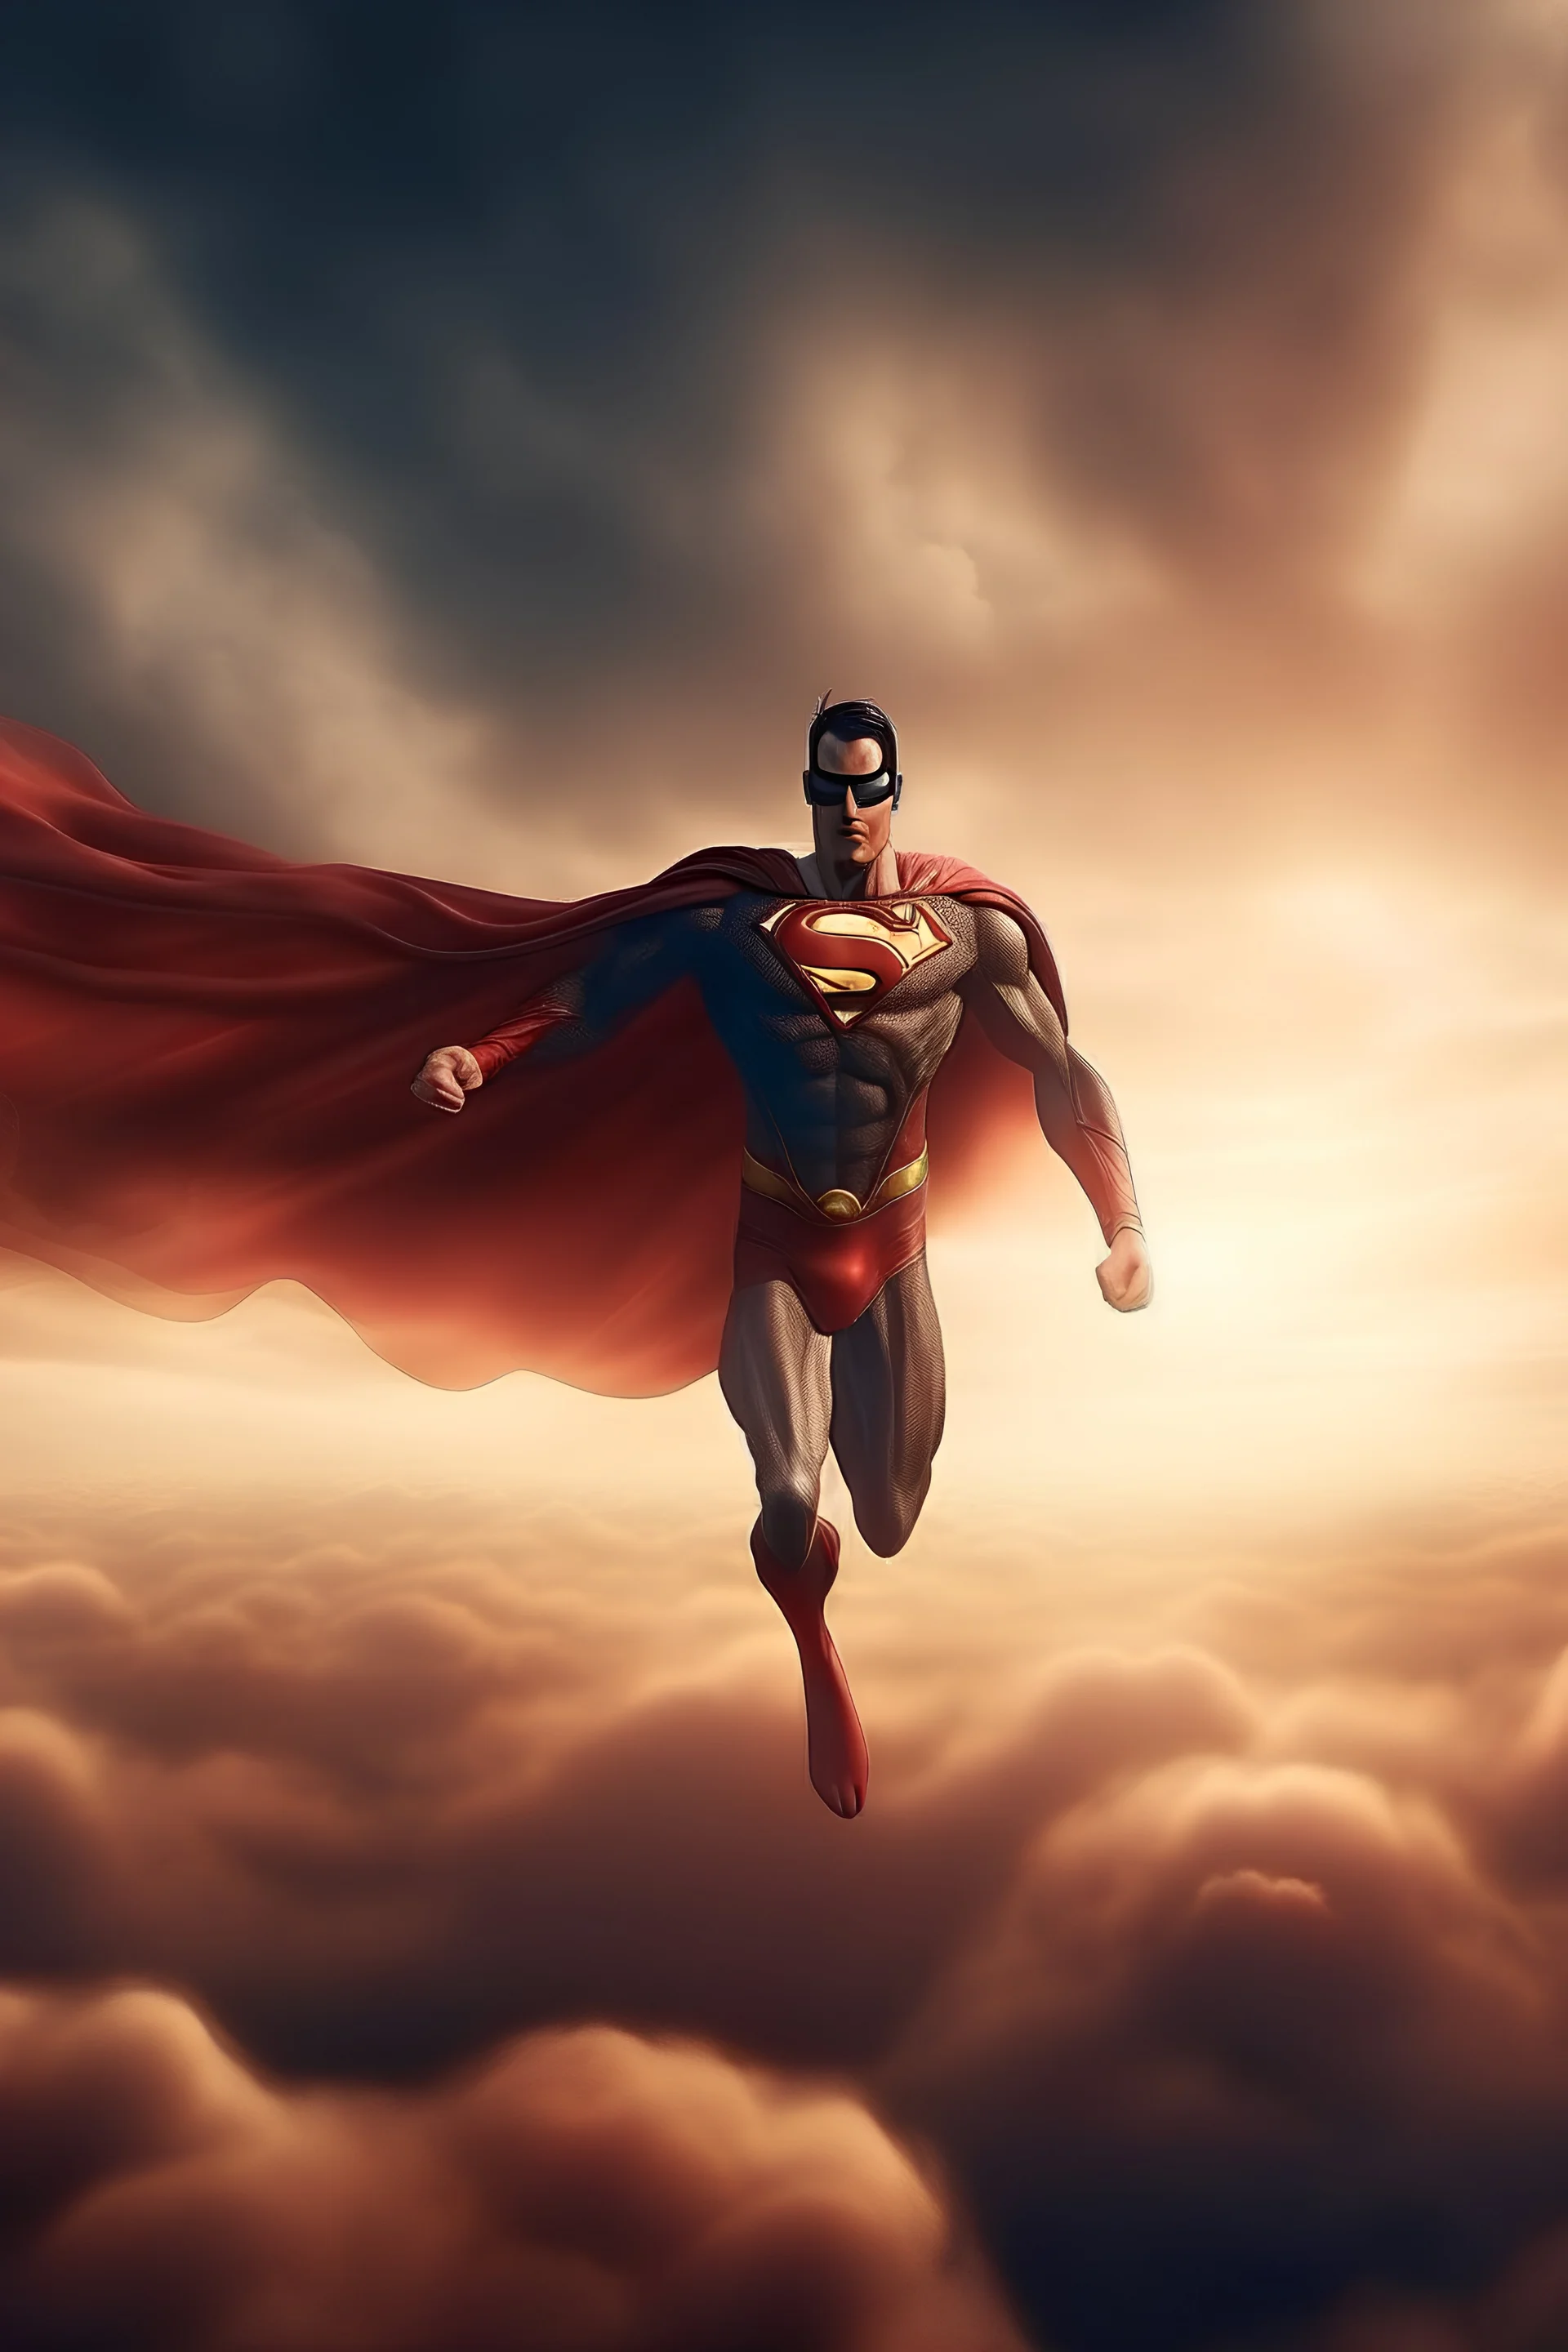 retrato realista del cuerpo de un superheroe en el centro de la imagen volando entre las nubes en un atardecer